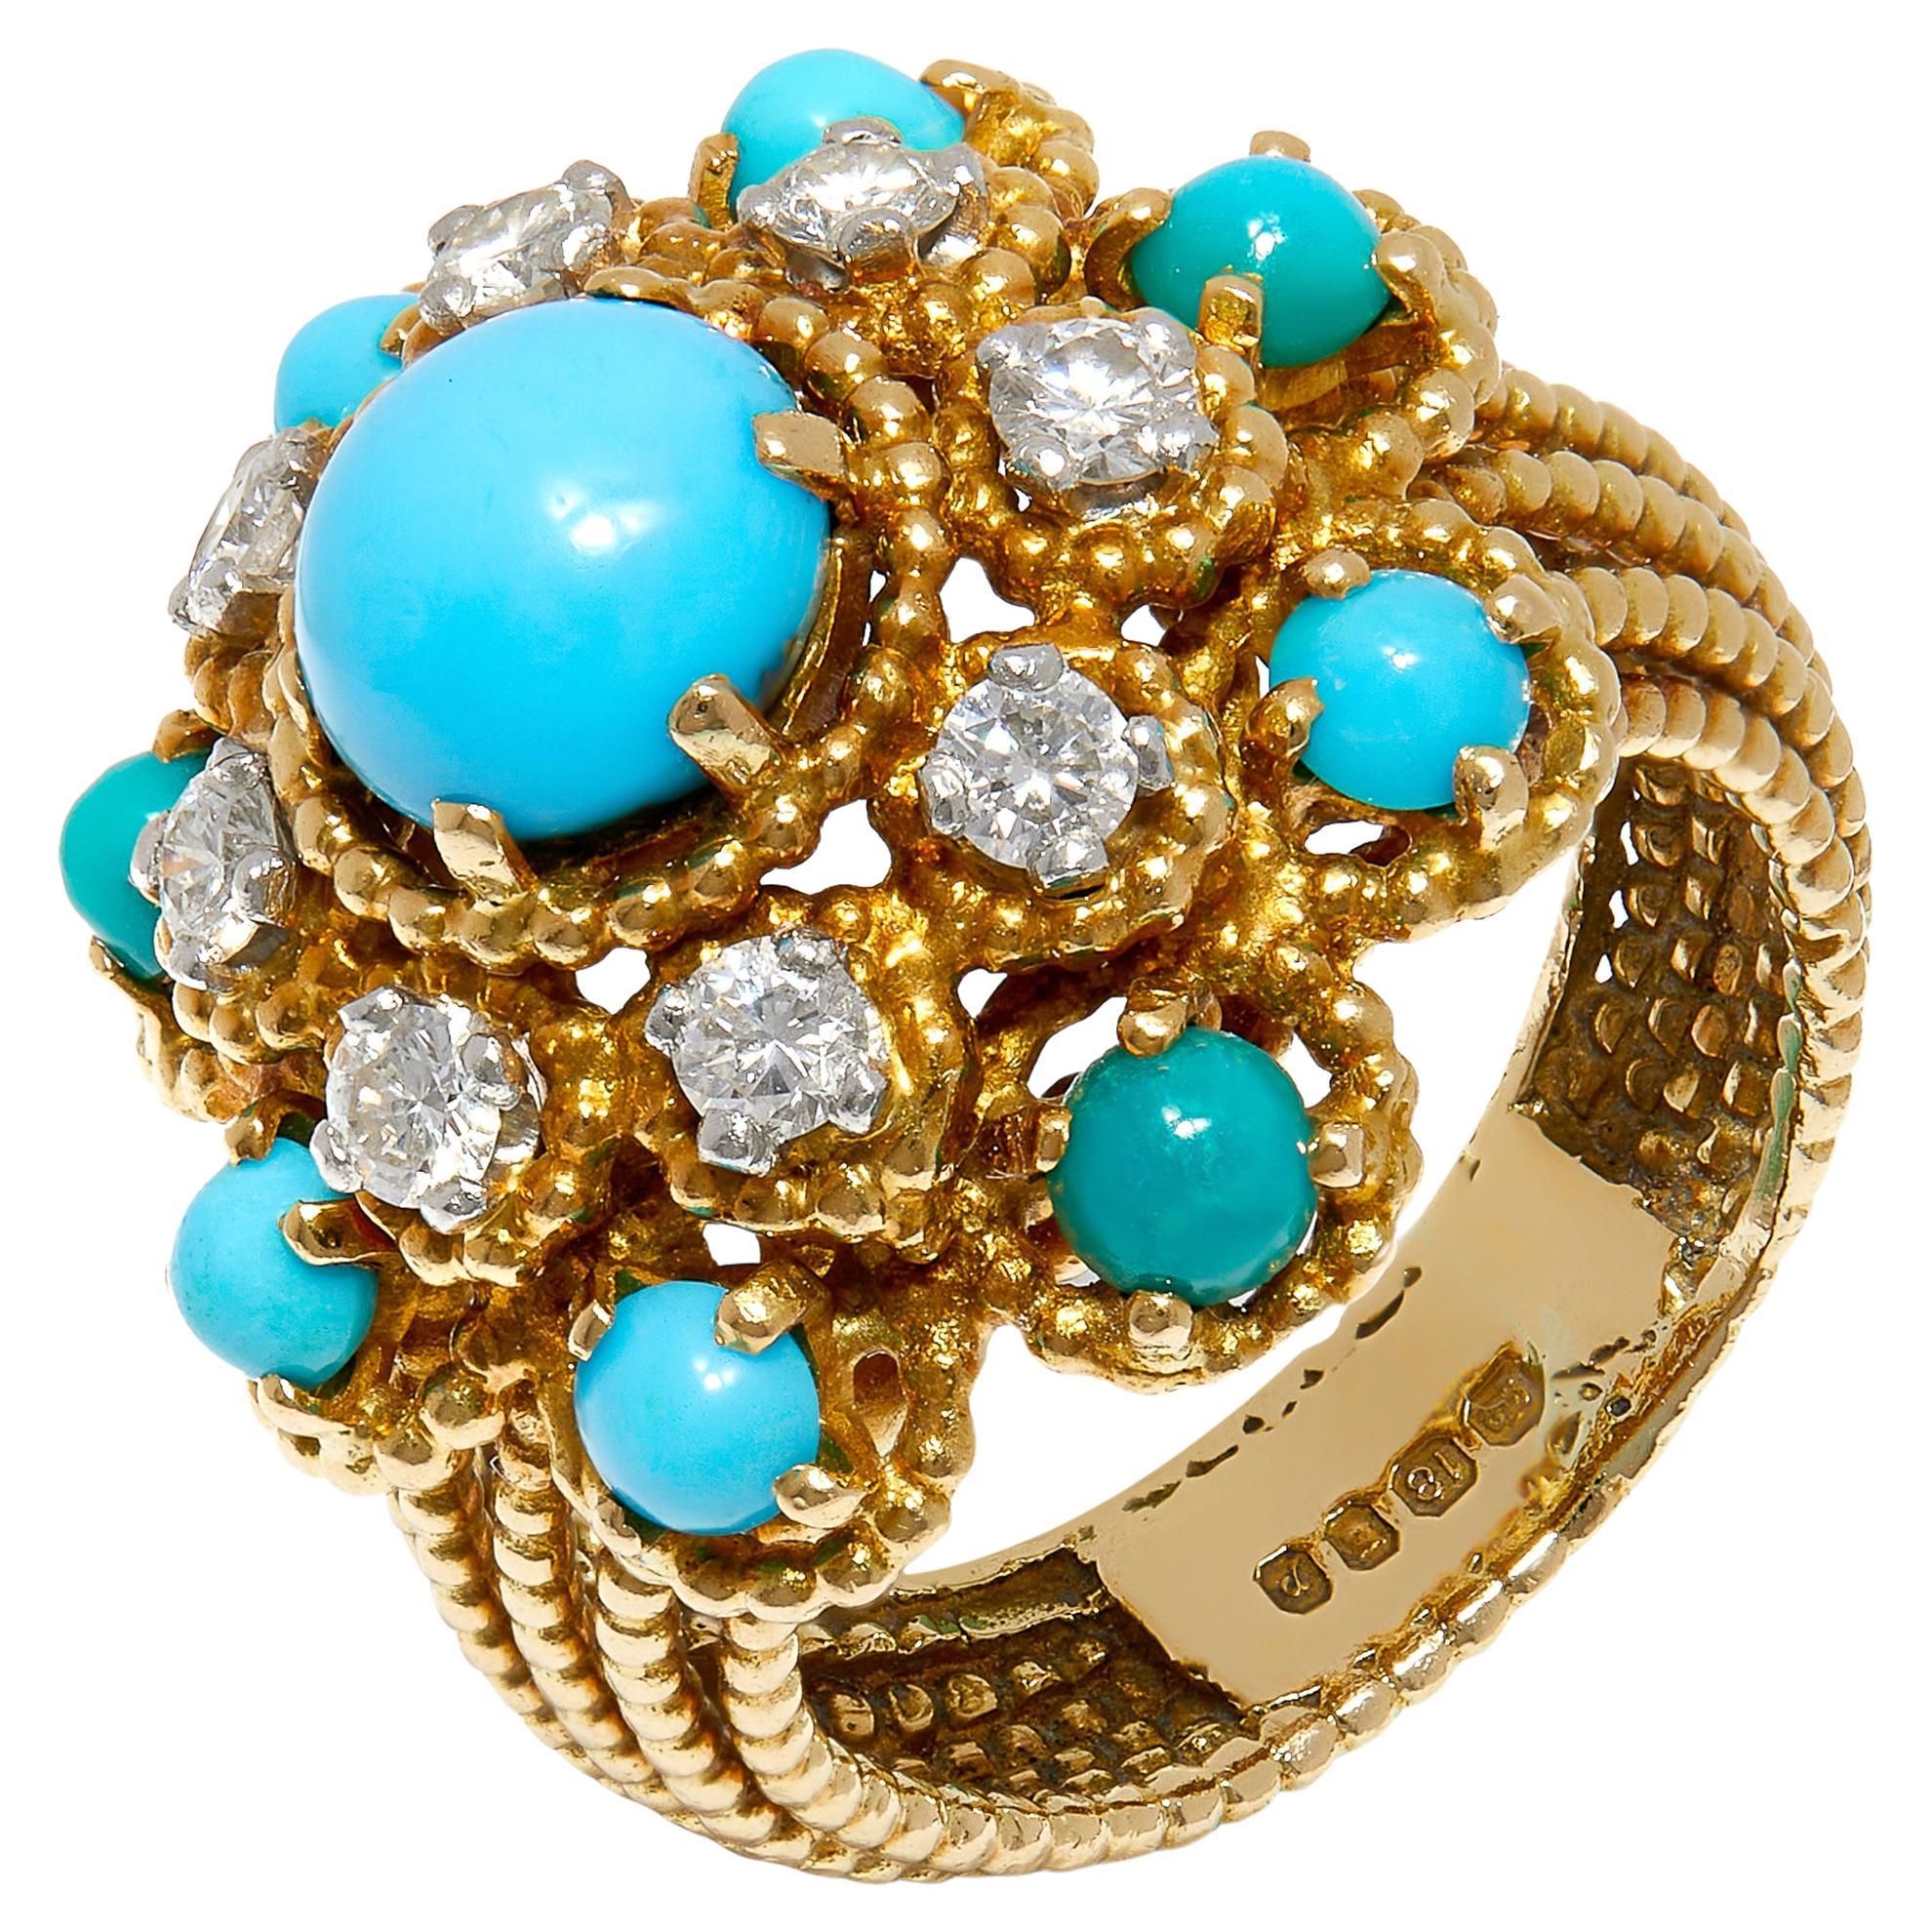 Vintage 1970s Gold Bombé Dress Ring with Turquoise and Diamonds (bague de robe en or bombé avec turquoise et diamants)